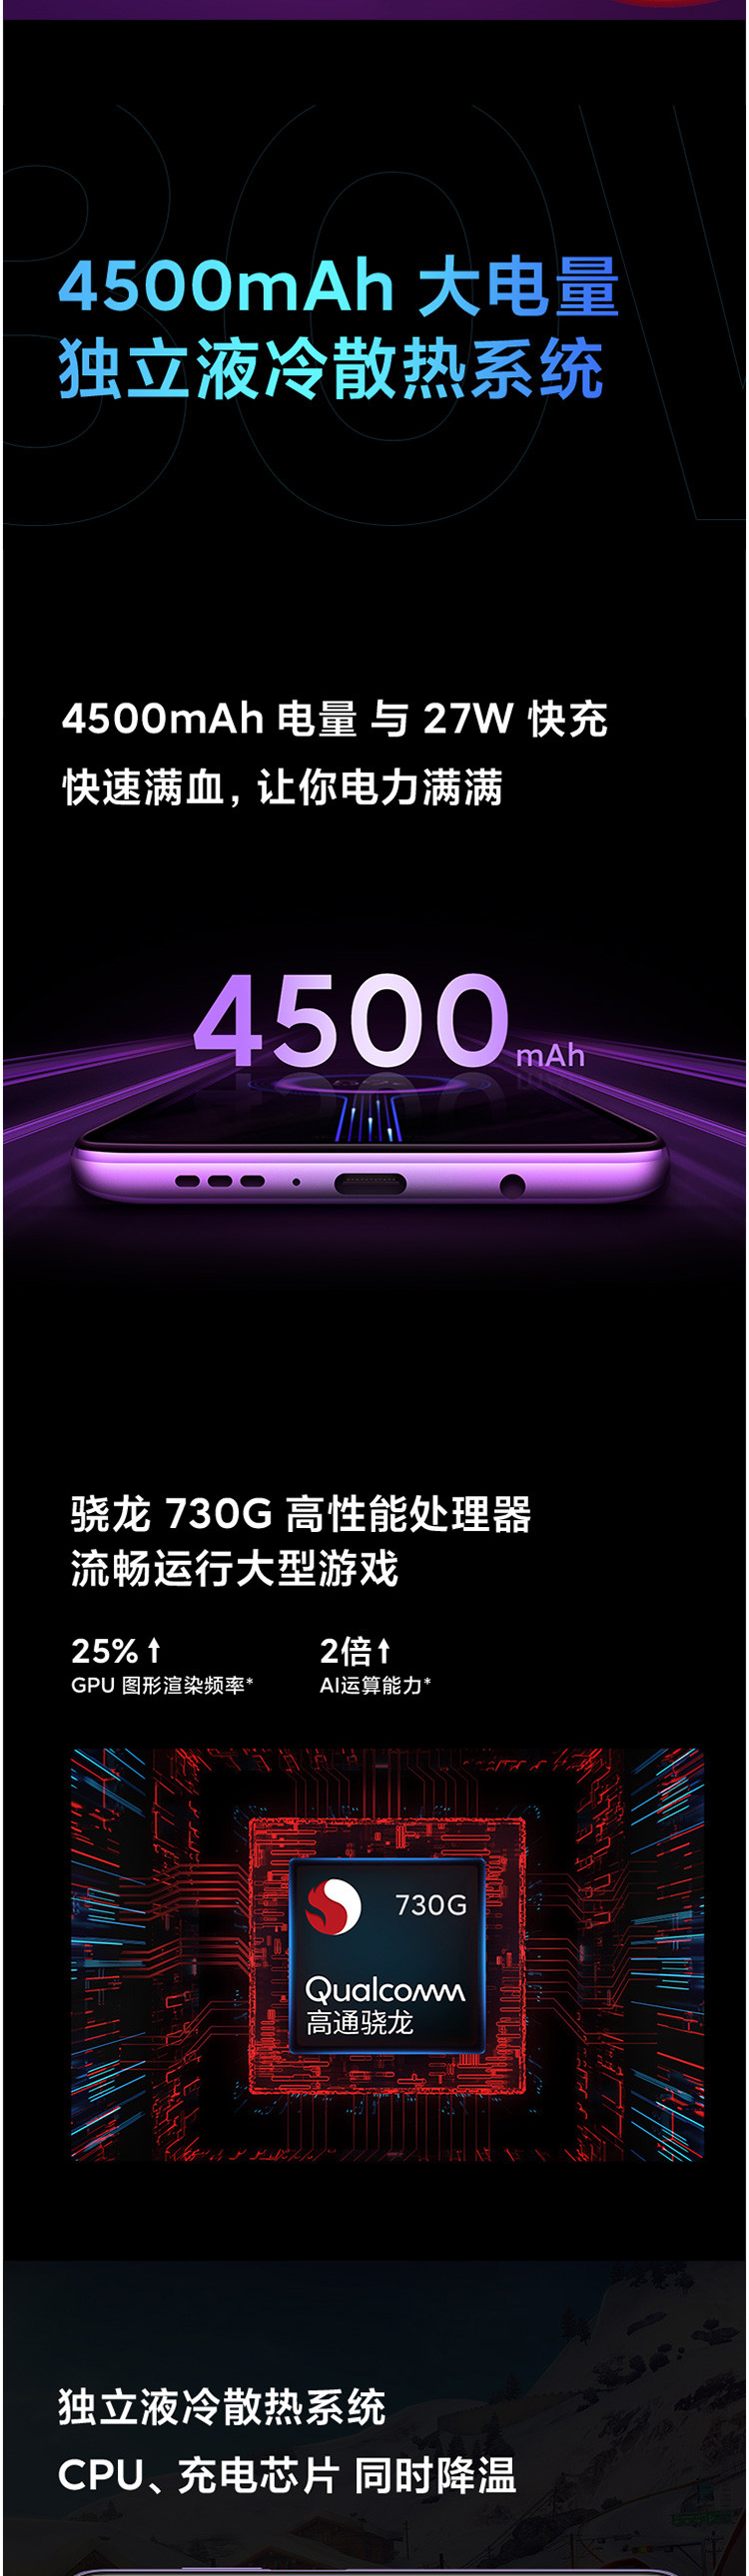 小米/MI Redmi K30  4G手机 120Hz流速屏  8GB+128GB 游戏智能手机